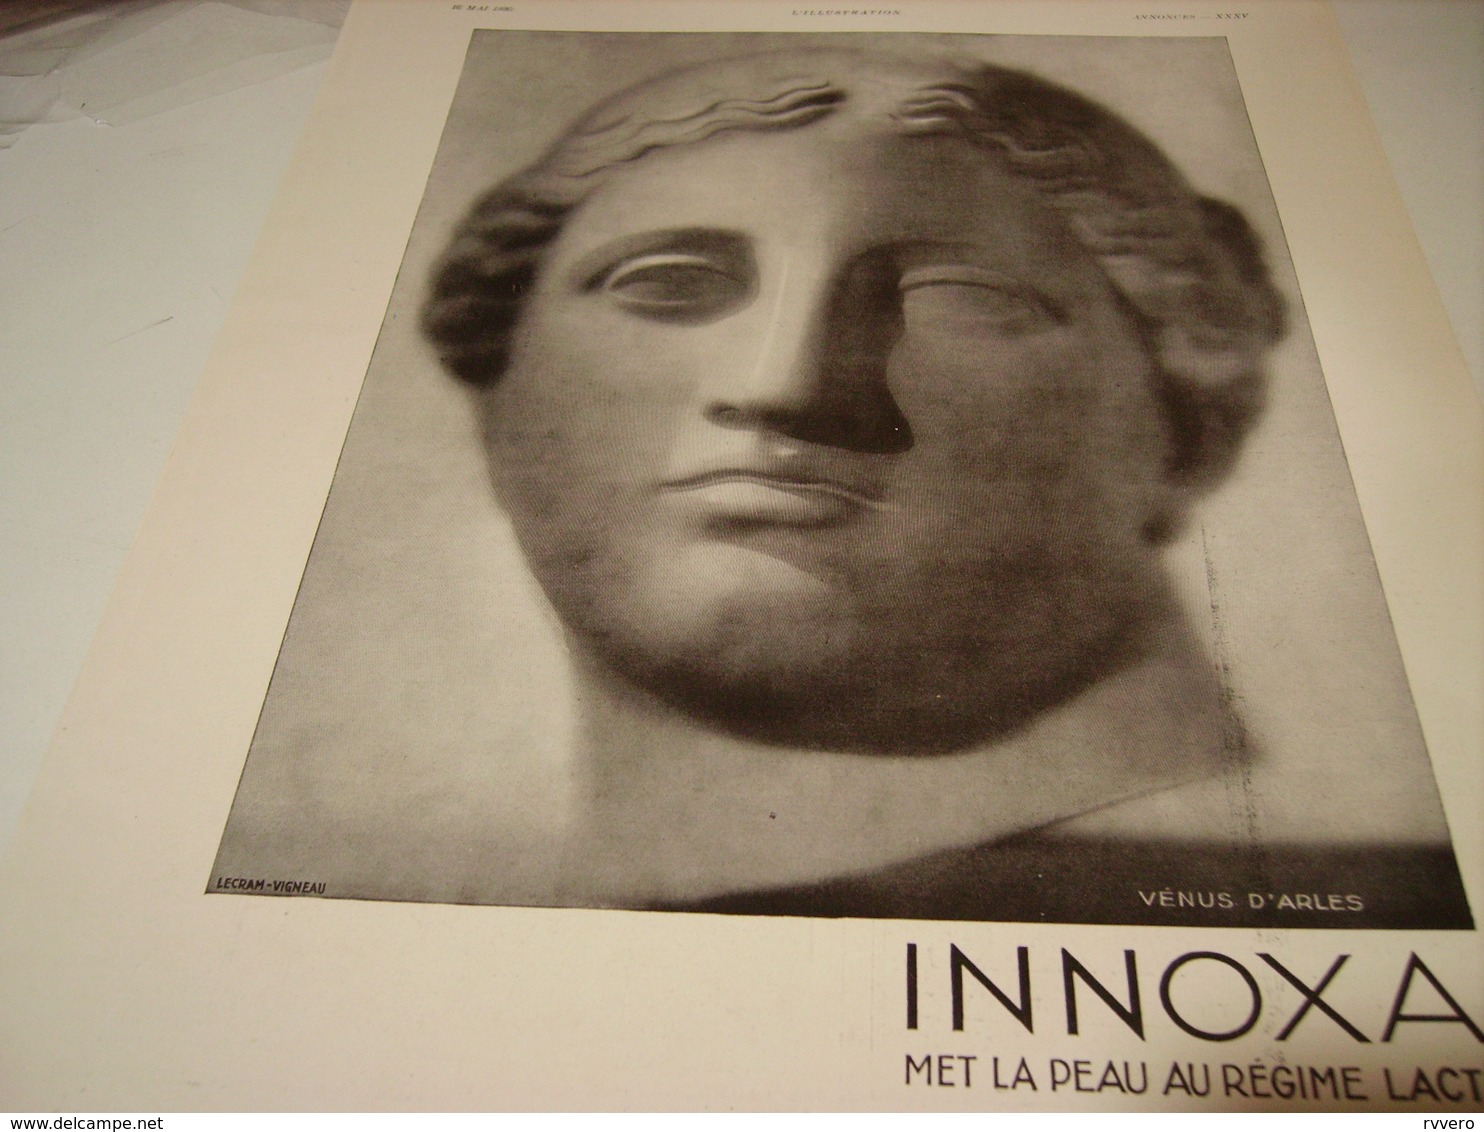 ANCIENNE PUBLICITE VENUS D ARLE INNOXA 1930 - Publicités